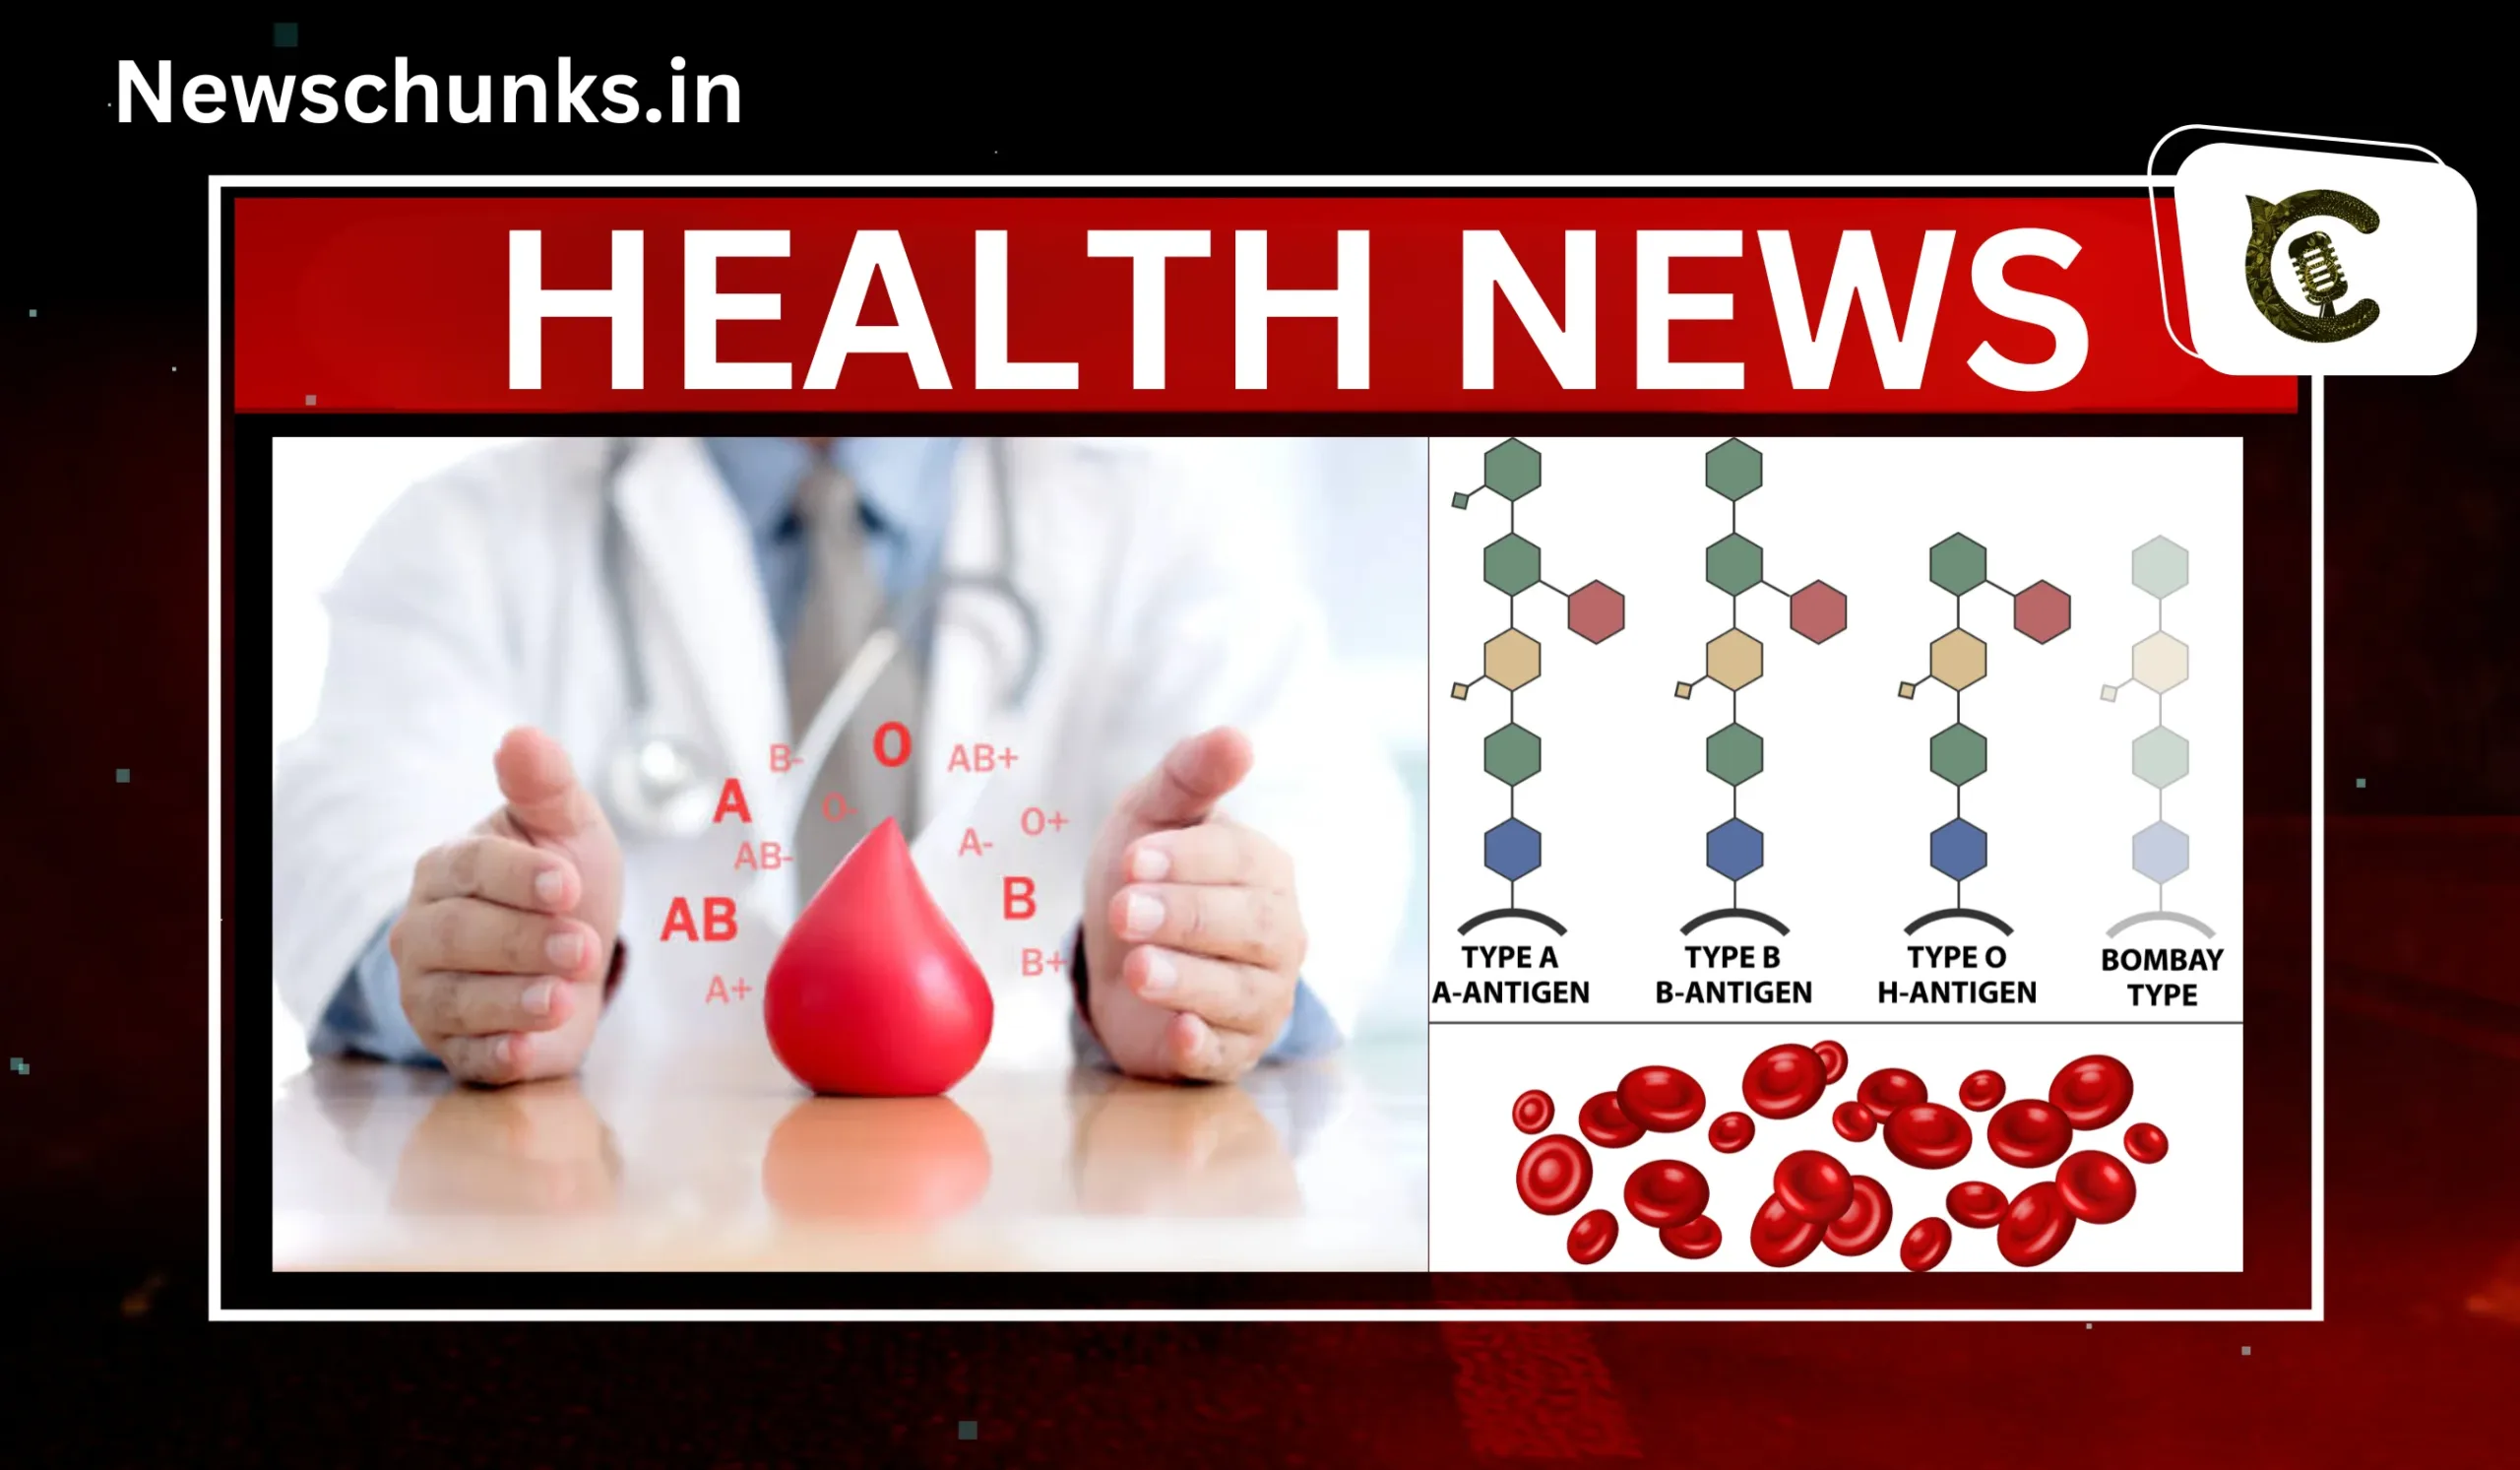 Bombay Blood Group rare blood group of India: बॉम्बे ब्लड ग्रुप, सिर्फ भारत में ही पाया जाता है ये रेयर ग्रुप